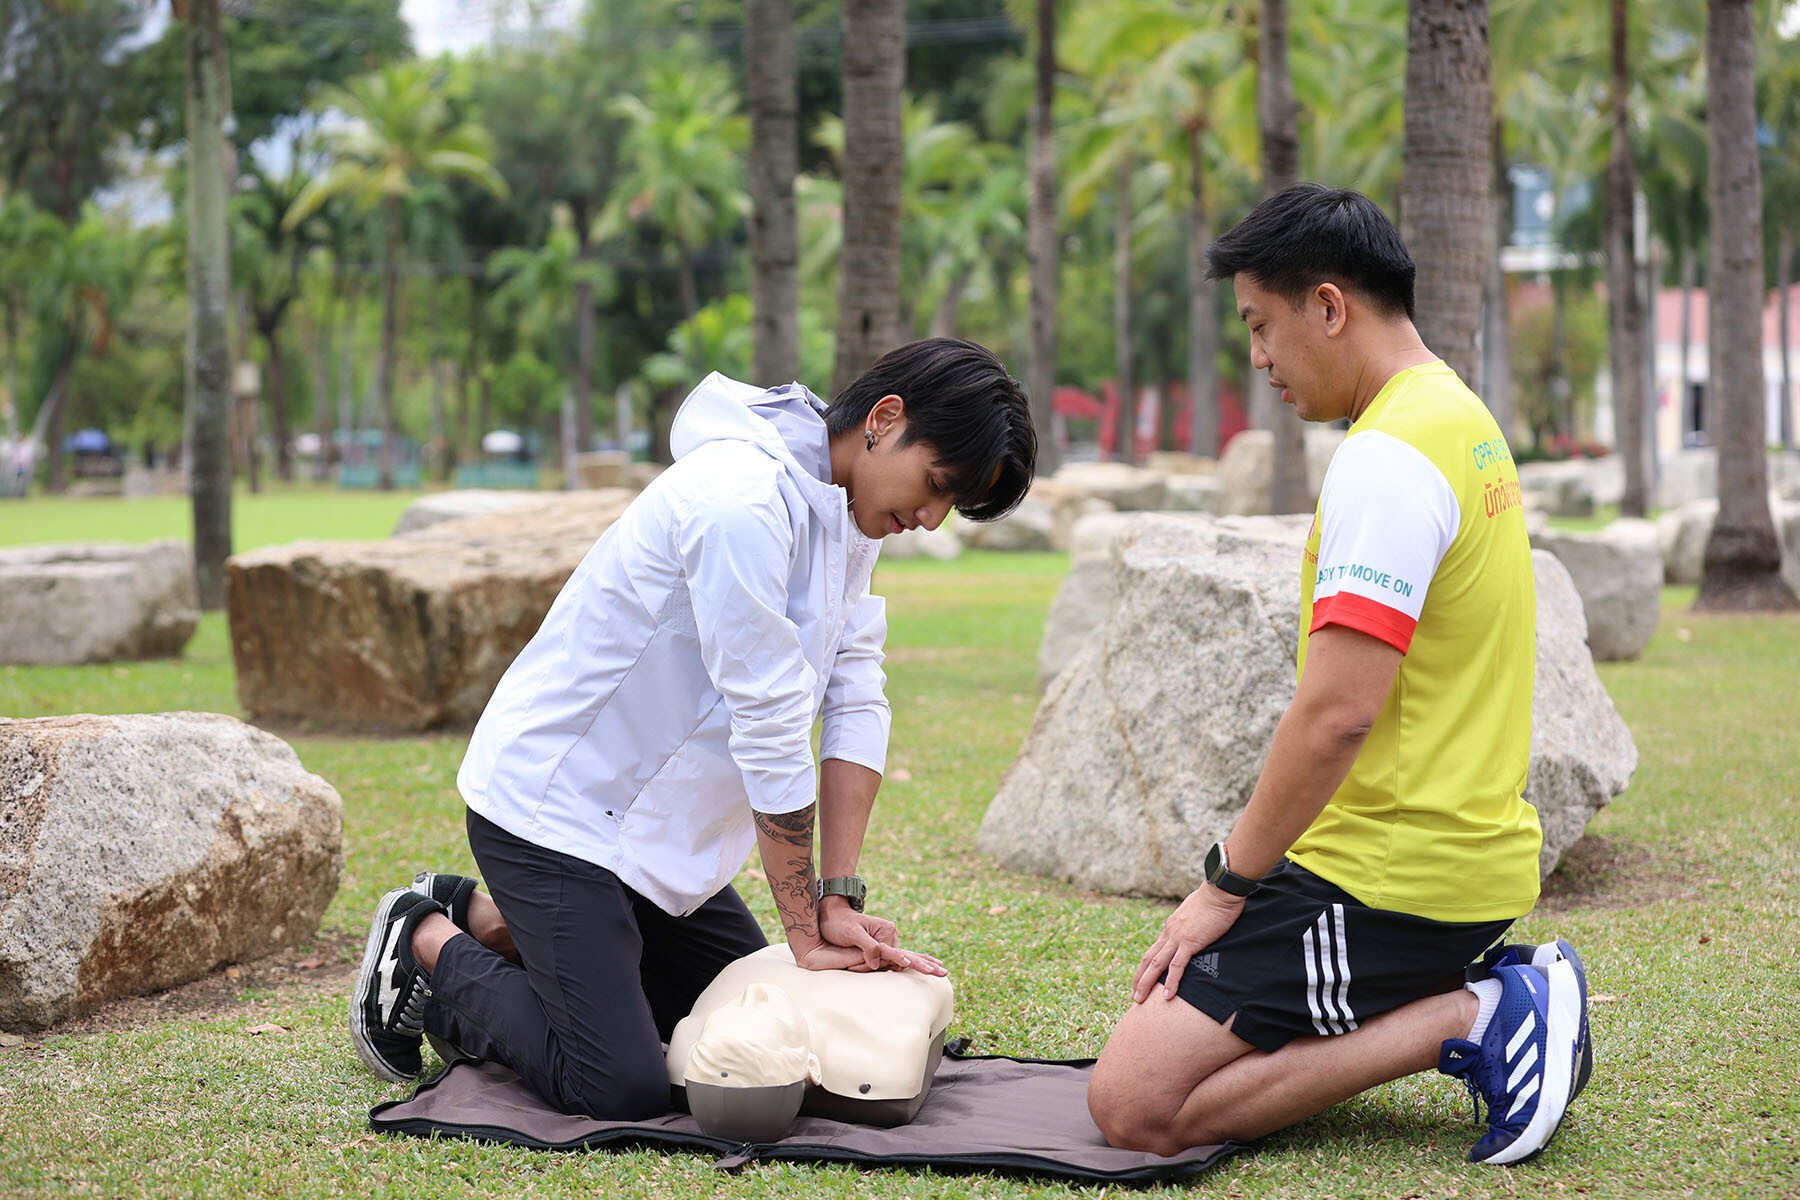 สสส. ดันระบบแพทย์ฉุกเฉินสร้างมาตรฐานงานกีฬามวลชนสู่สากล พร้อมหนุนคนไทยเสริมทักษะ CPR ลดภาวะวิกฤติเสียชีวิต